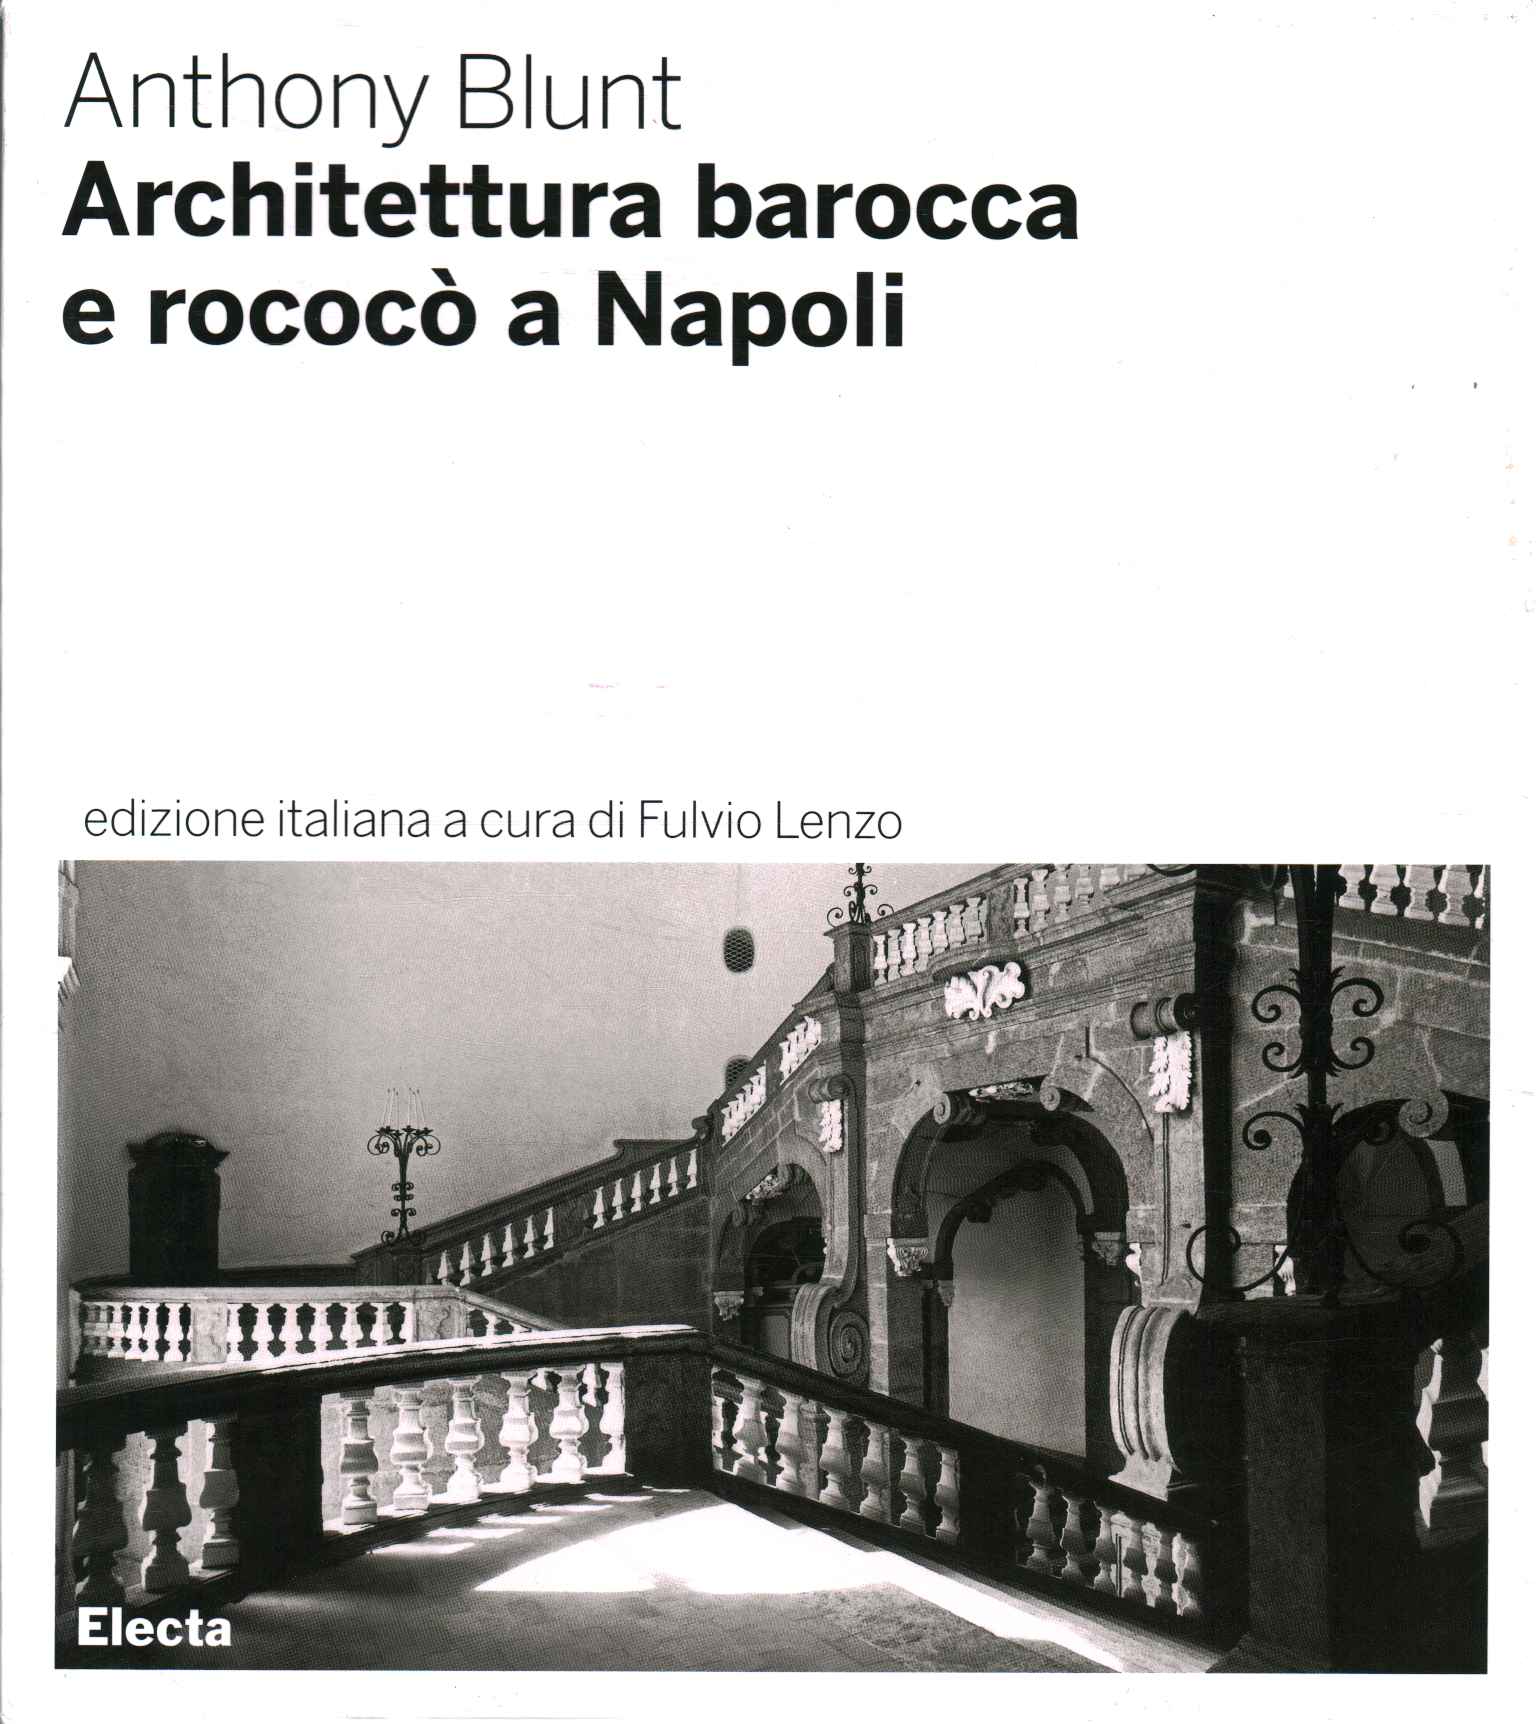 Architettura barocca e rococò a Nap